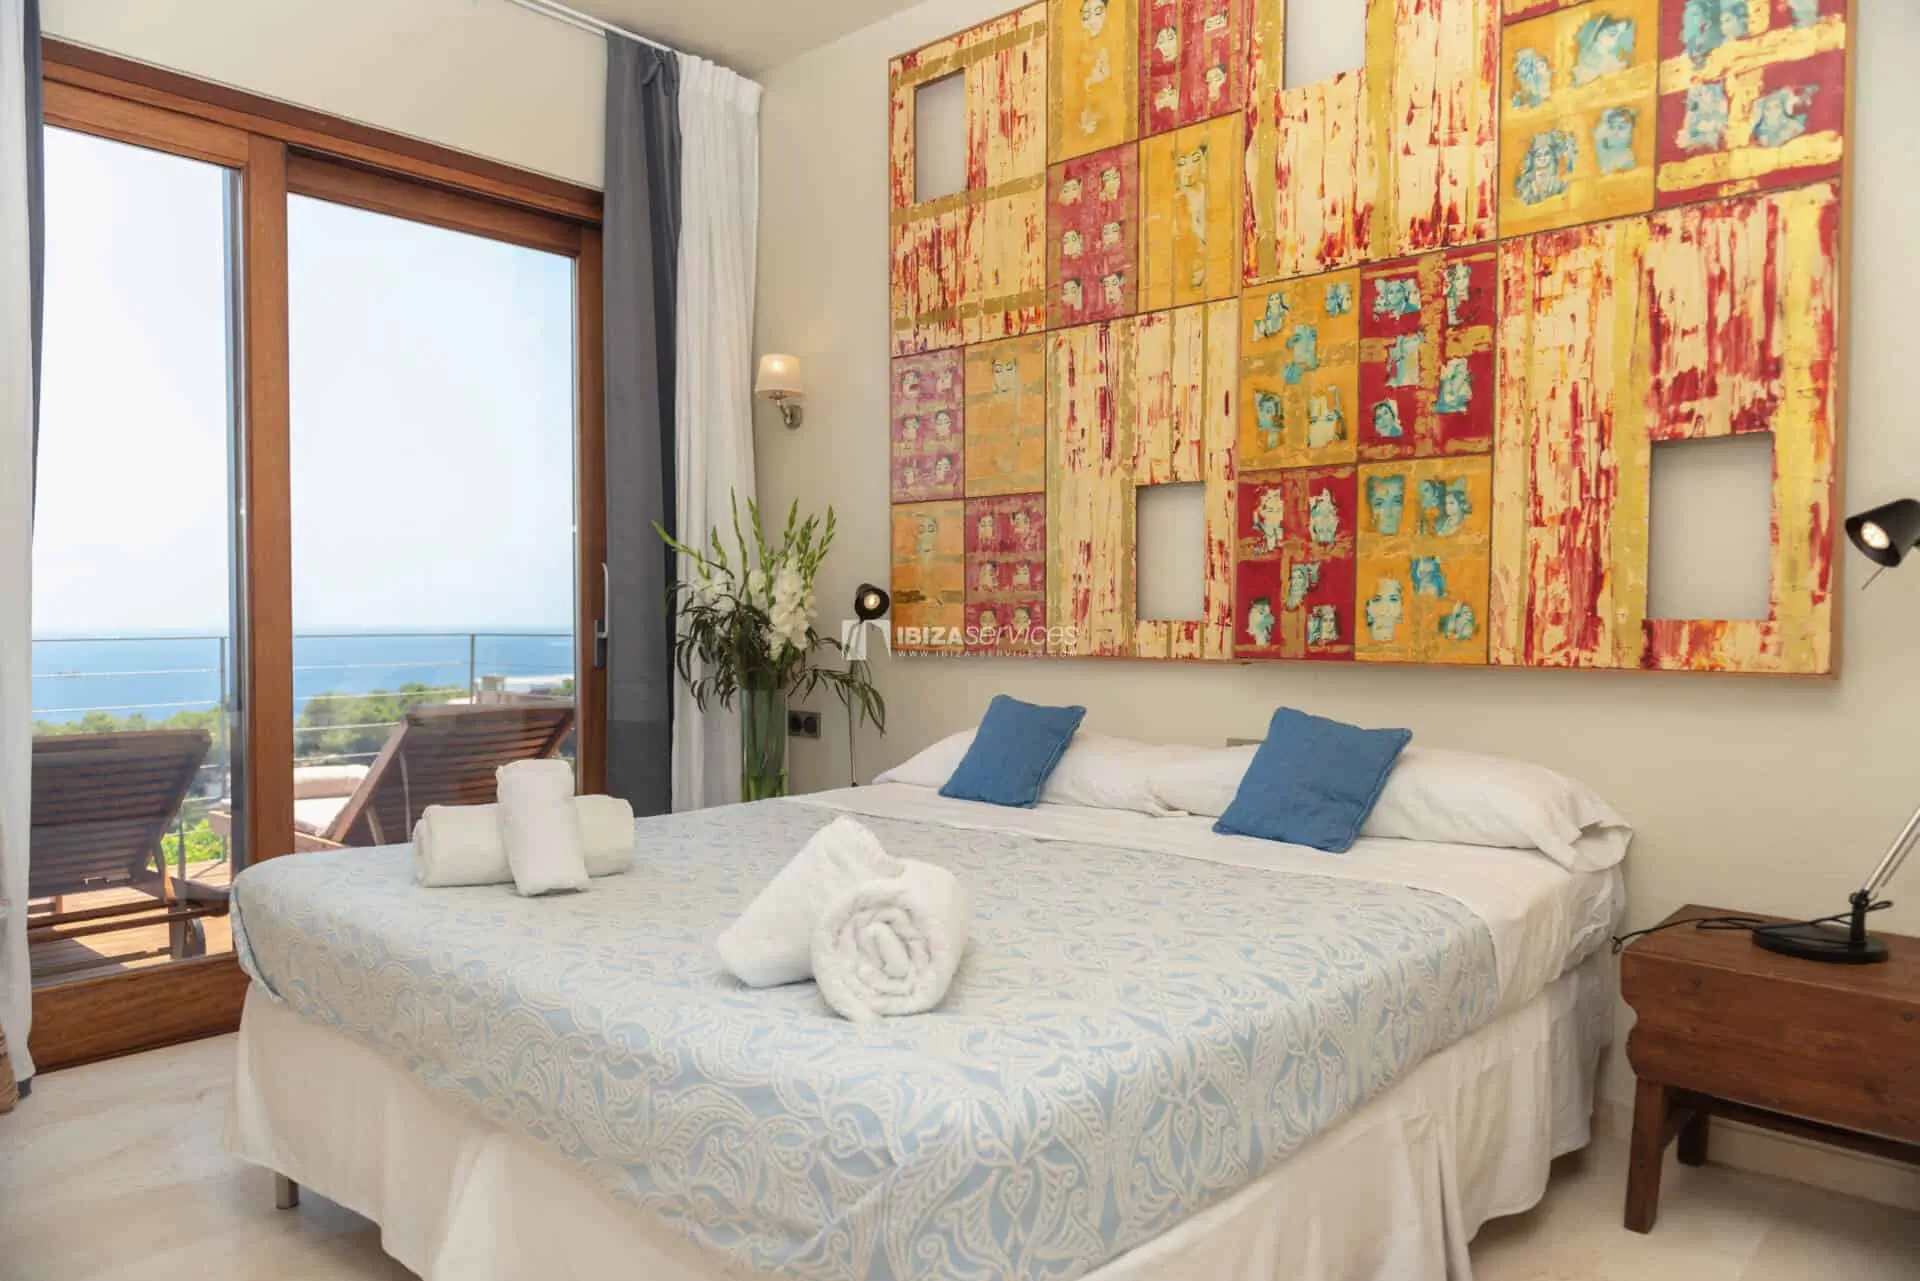 Roca llisa villa de vacance de 5 chambres avec superbe vue mer